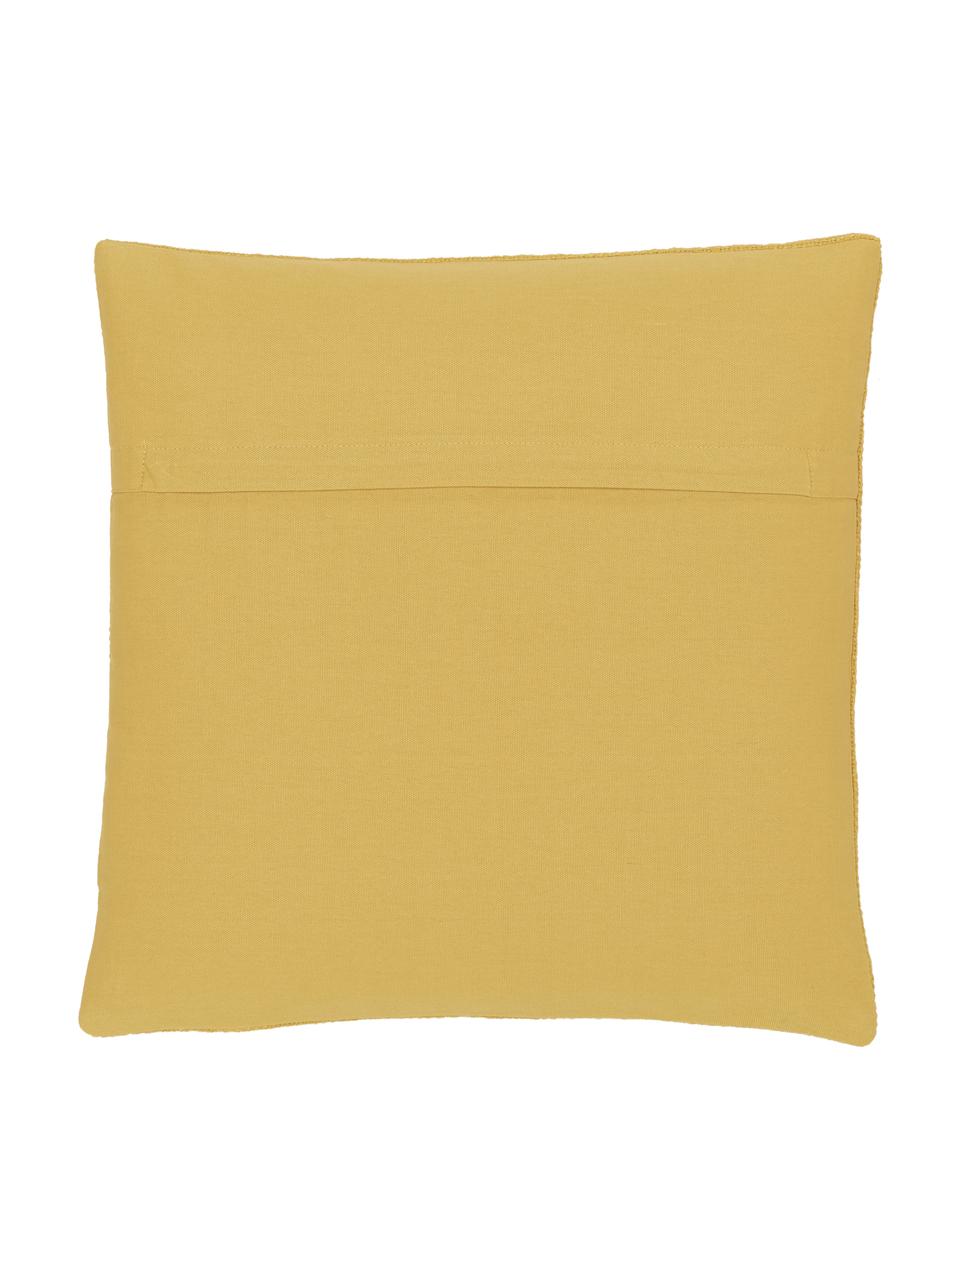 Housse de coussin jaune Penny, 100 % coton, Jaune, larg. 45 x long. 45 cm